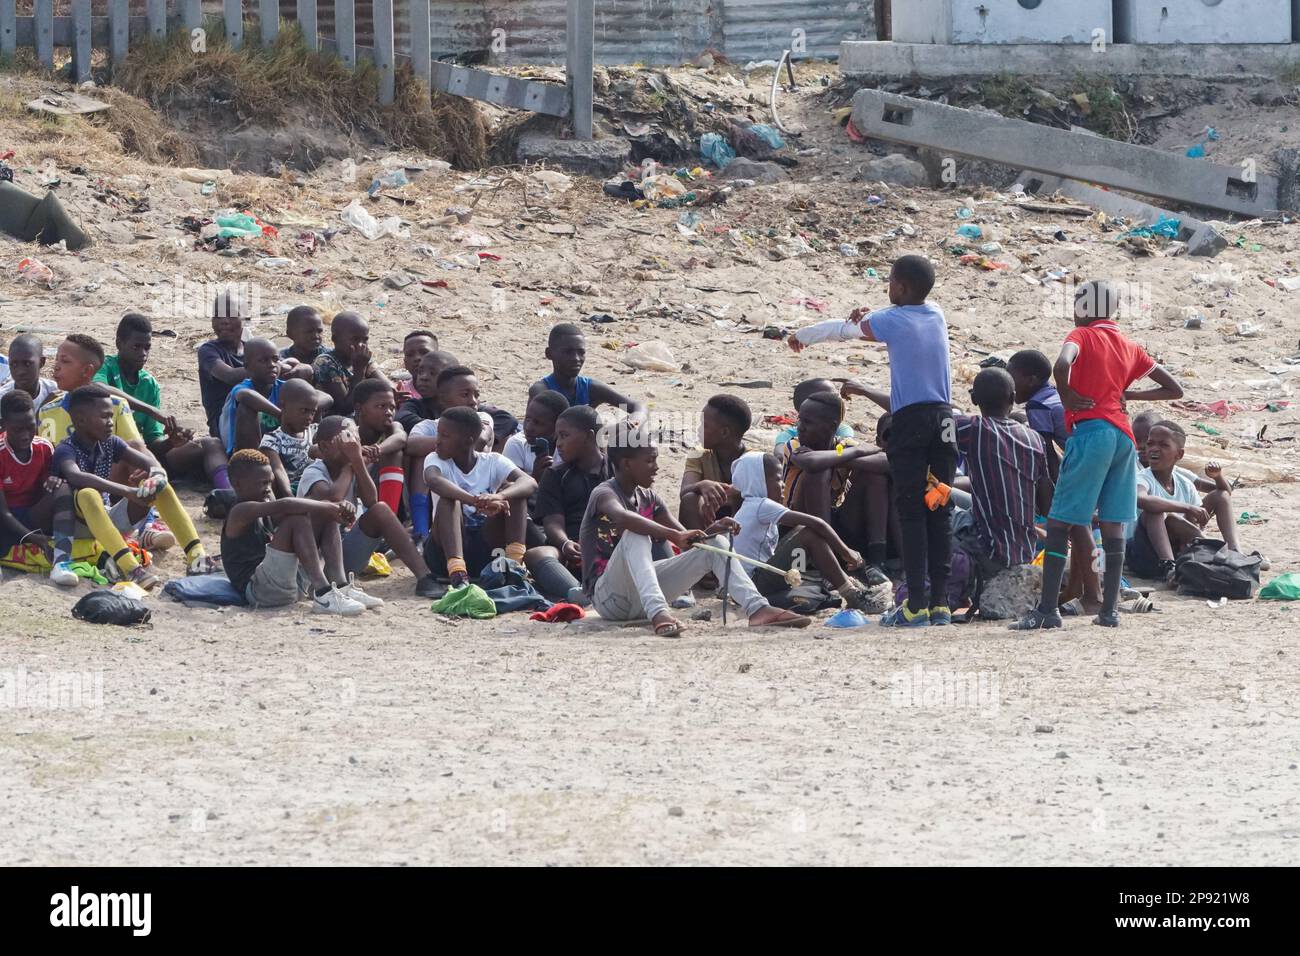 Un groupe de jeunes enfants ou enfants noirs d'Afrique du Sud s'assoient sur le sable pollué et jonché dans une commune en attendant de jouer à un match sportif Banque D'Images